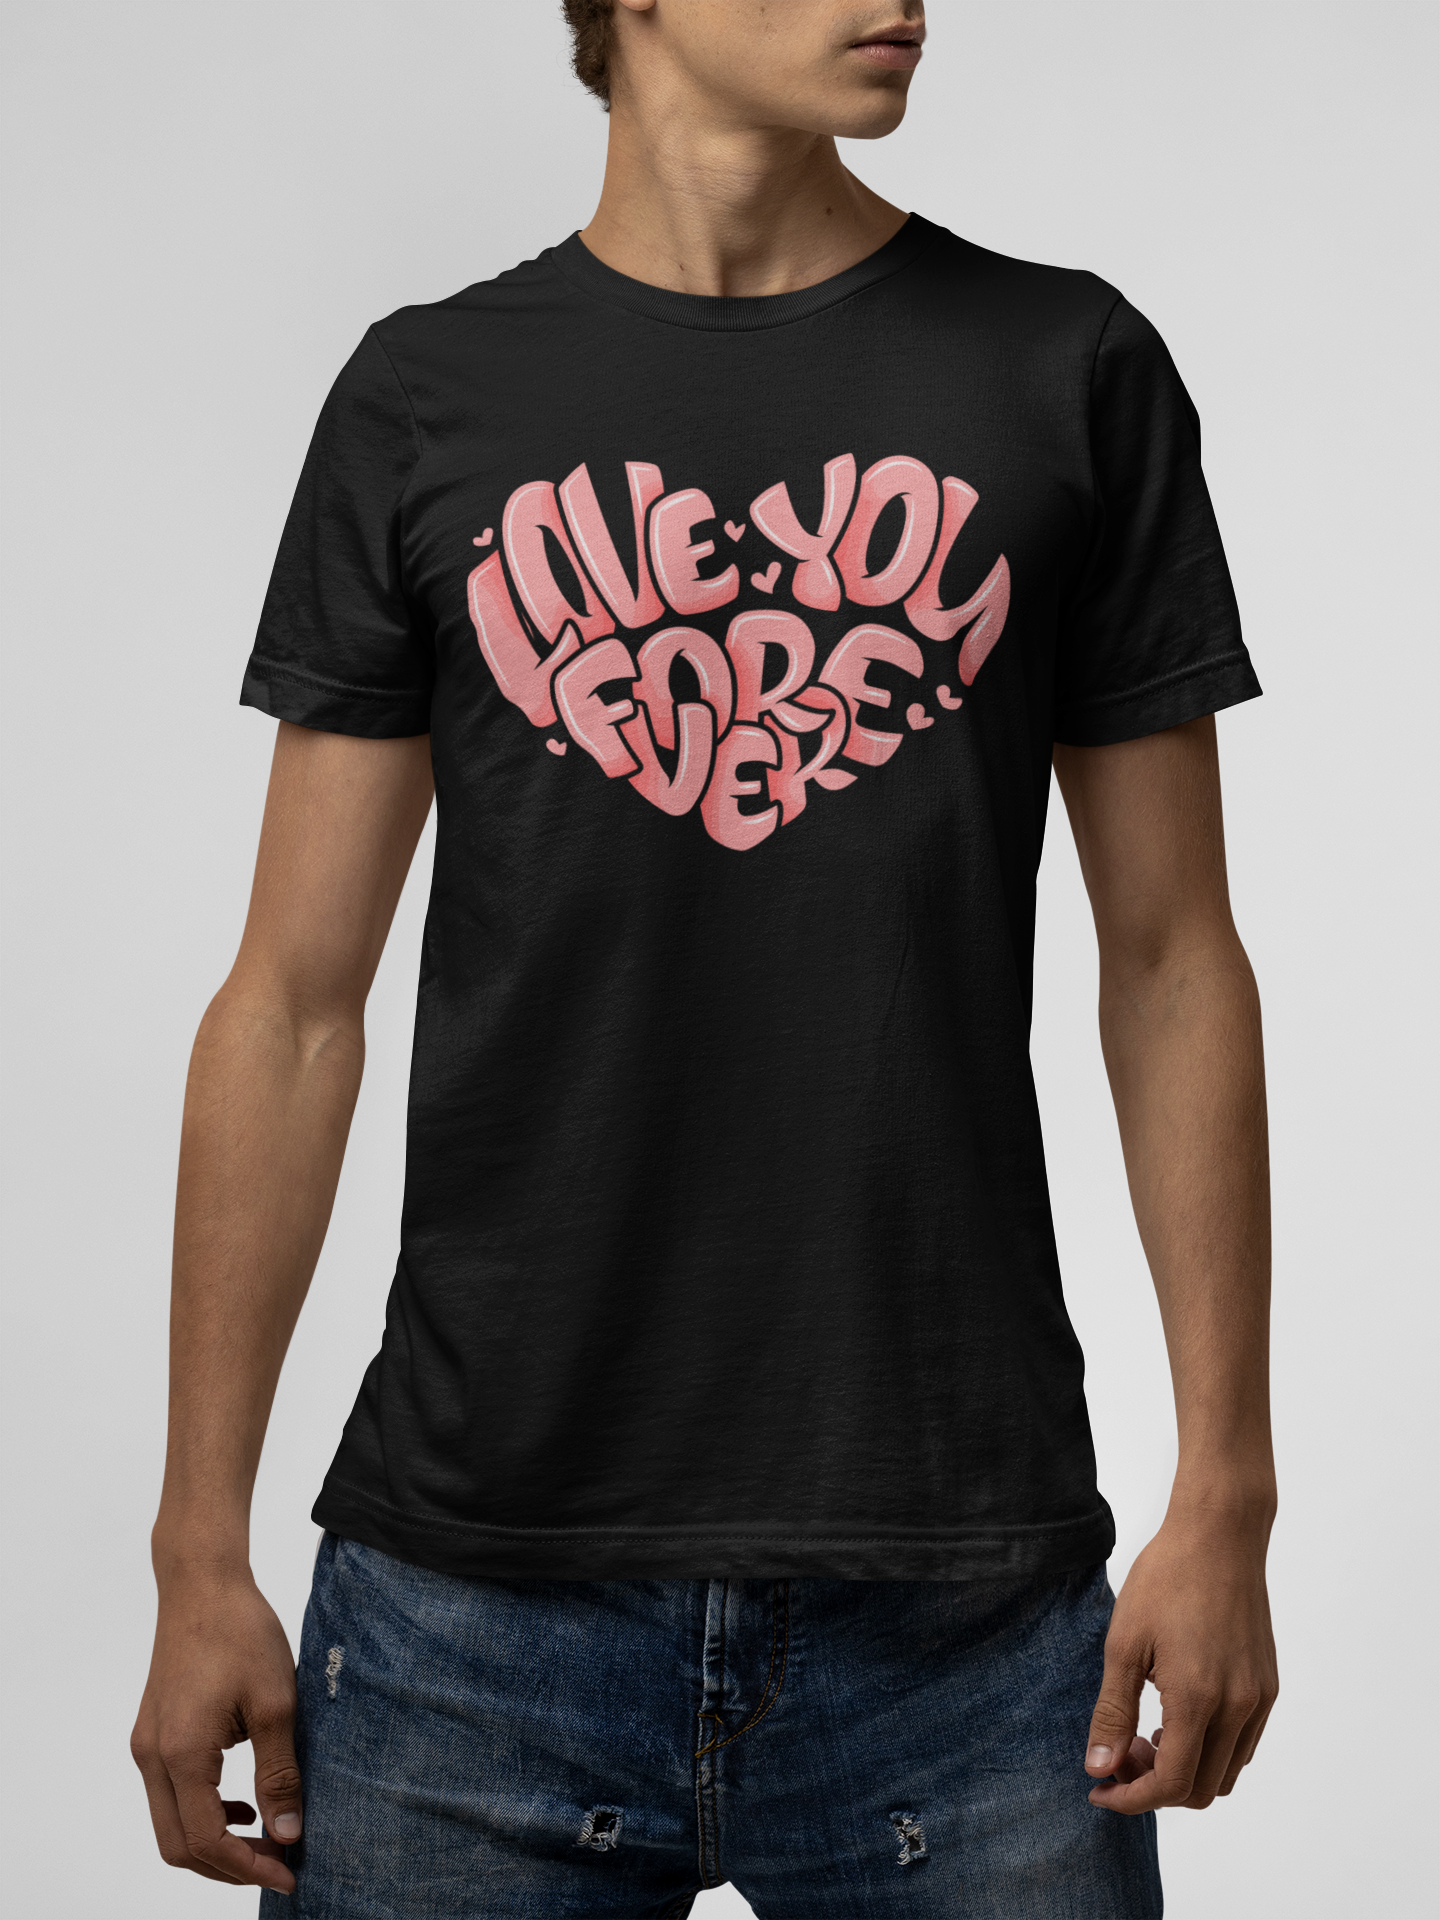 Love You Forever Black T-Shirt For Men